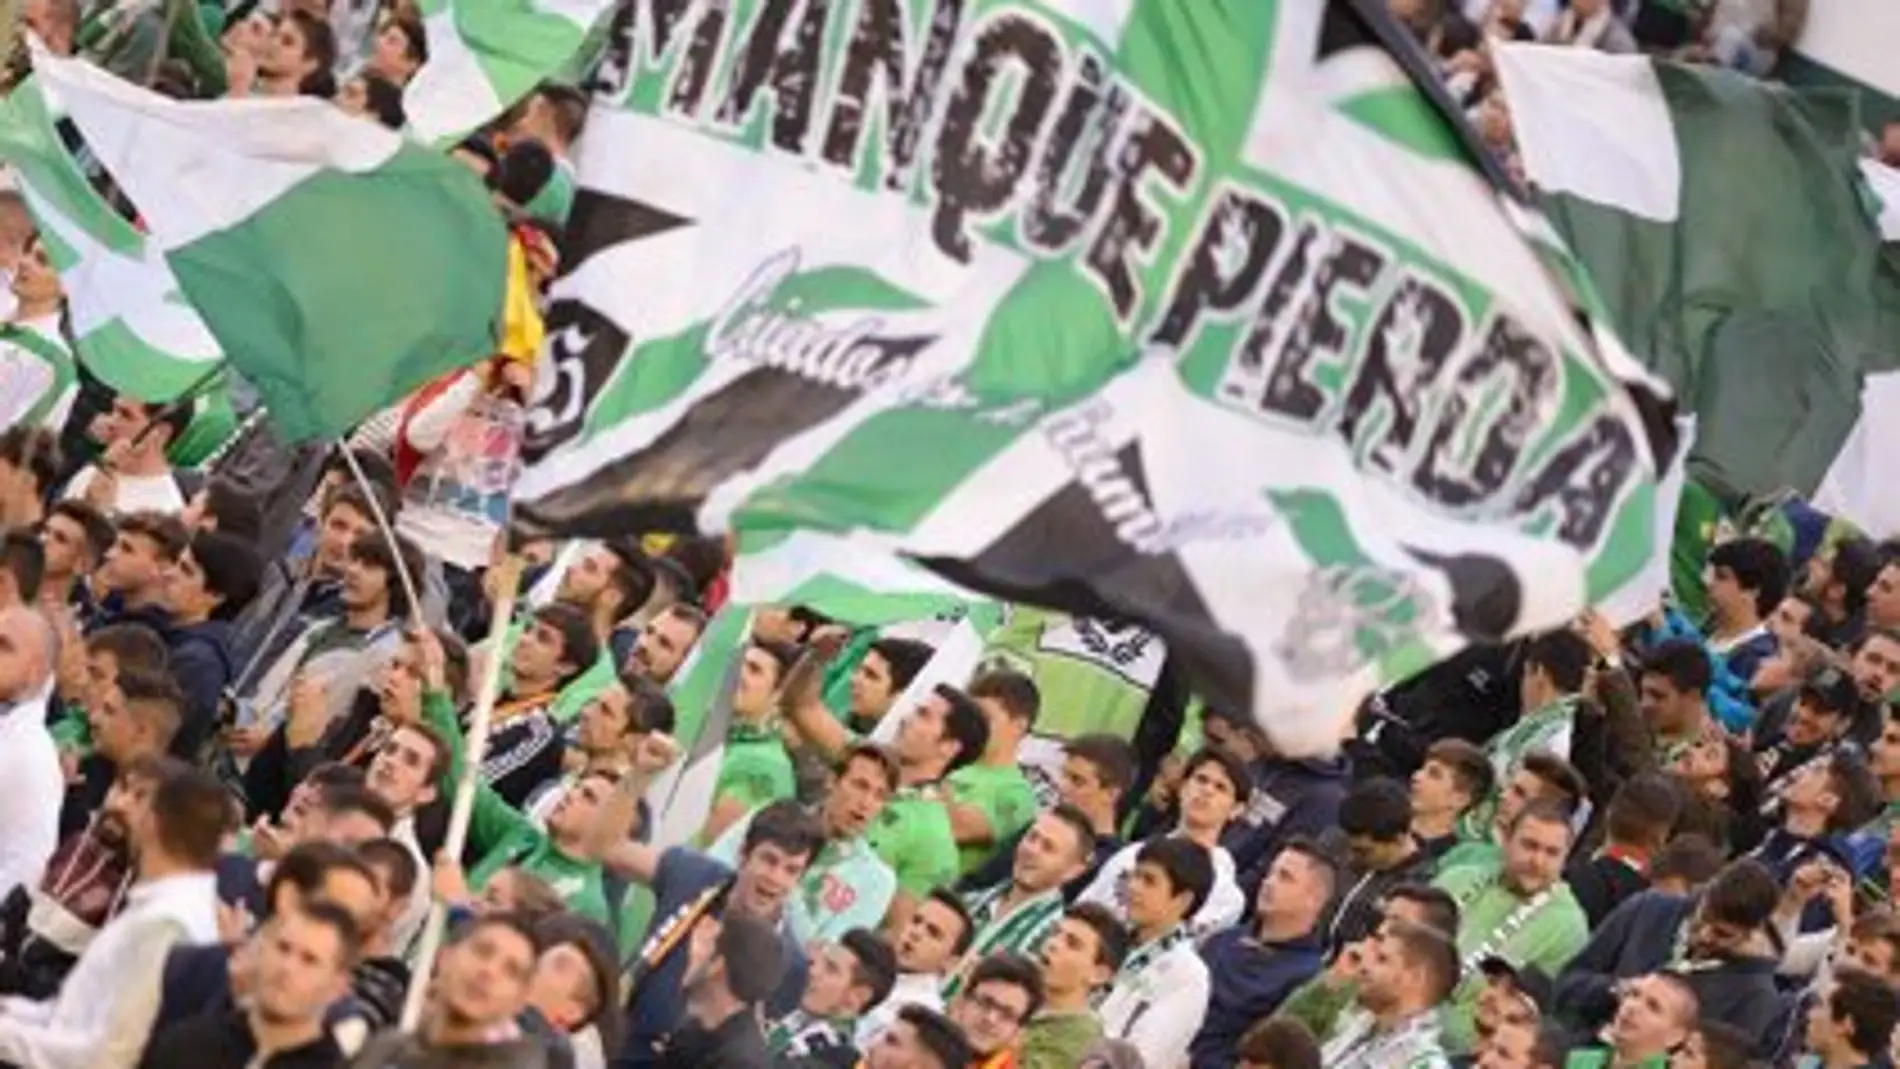 Aficionados del Real Betis animan a su equipo en el Benito Villamarín